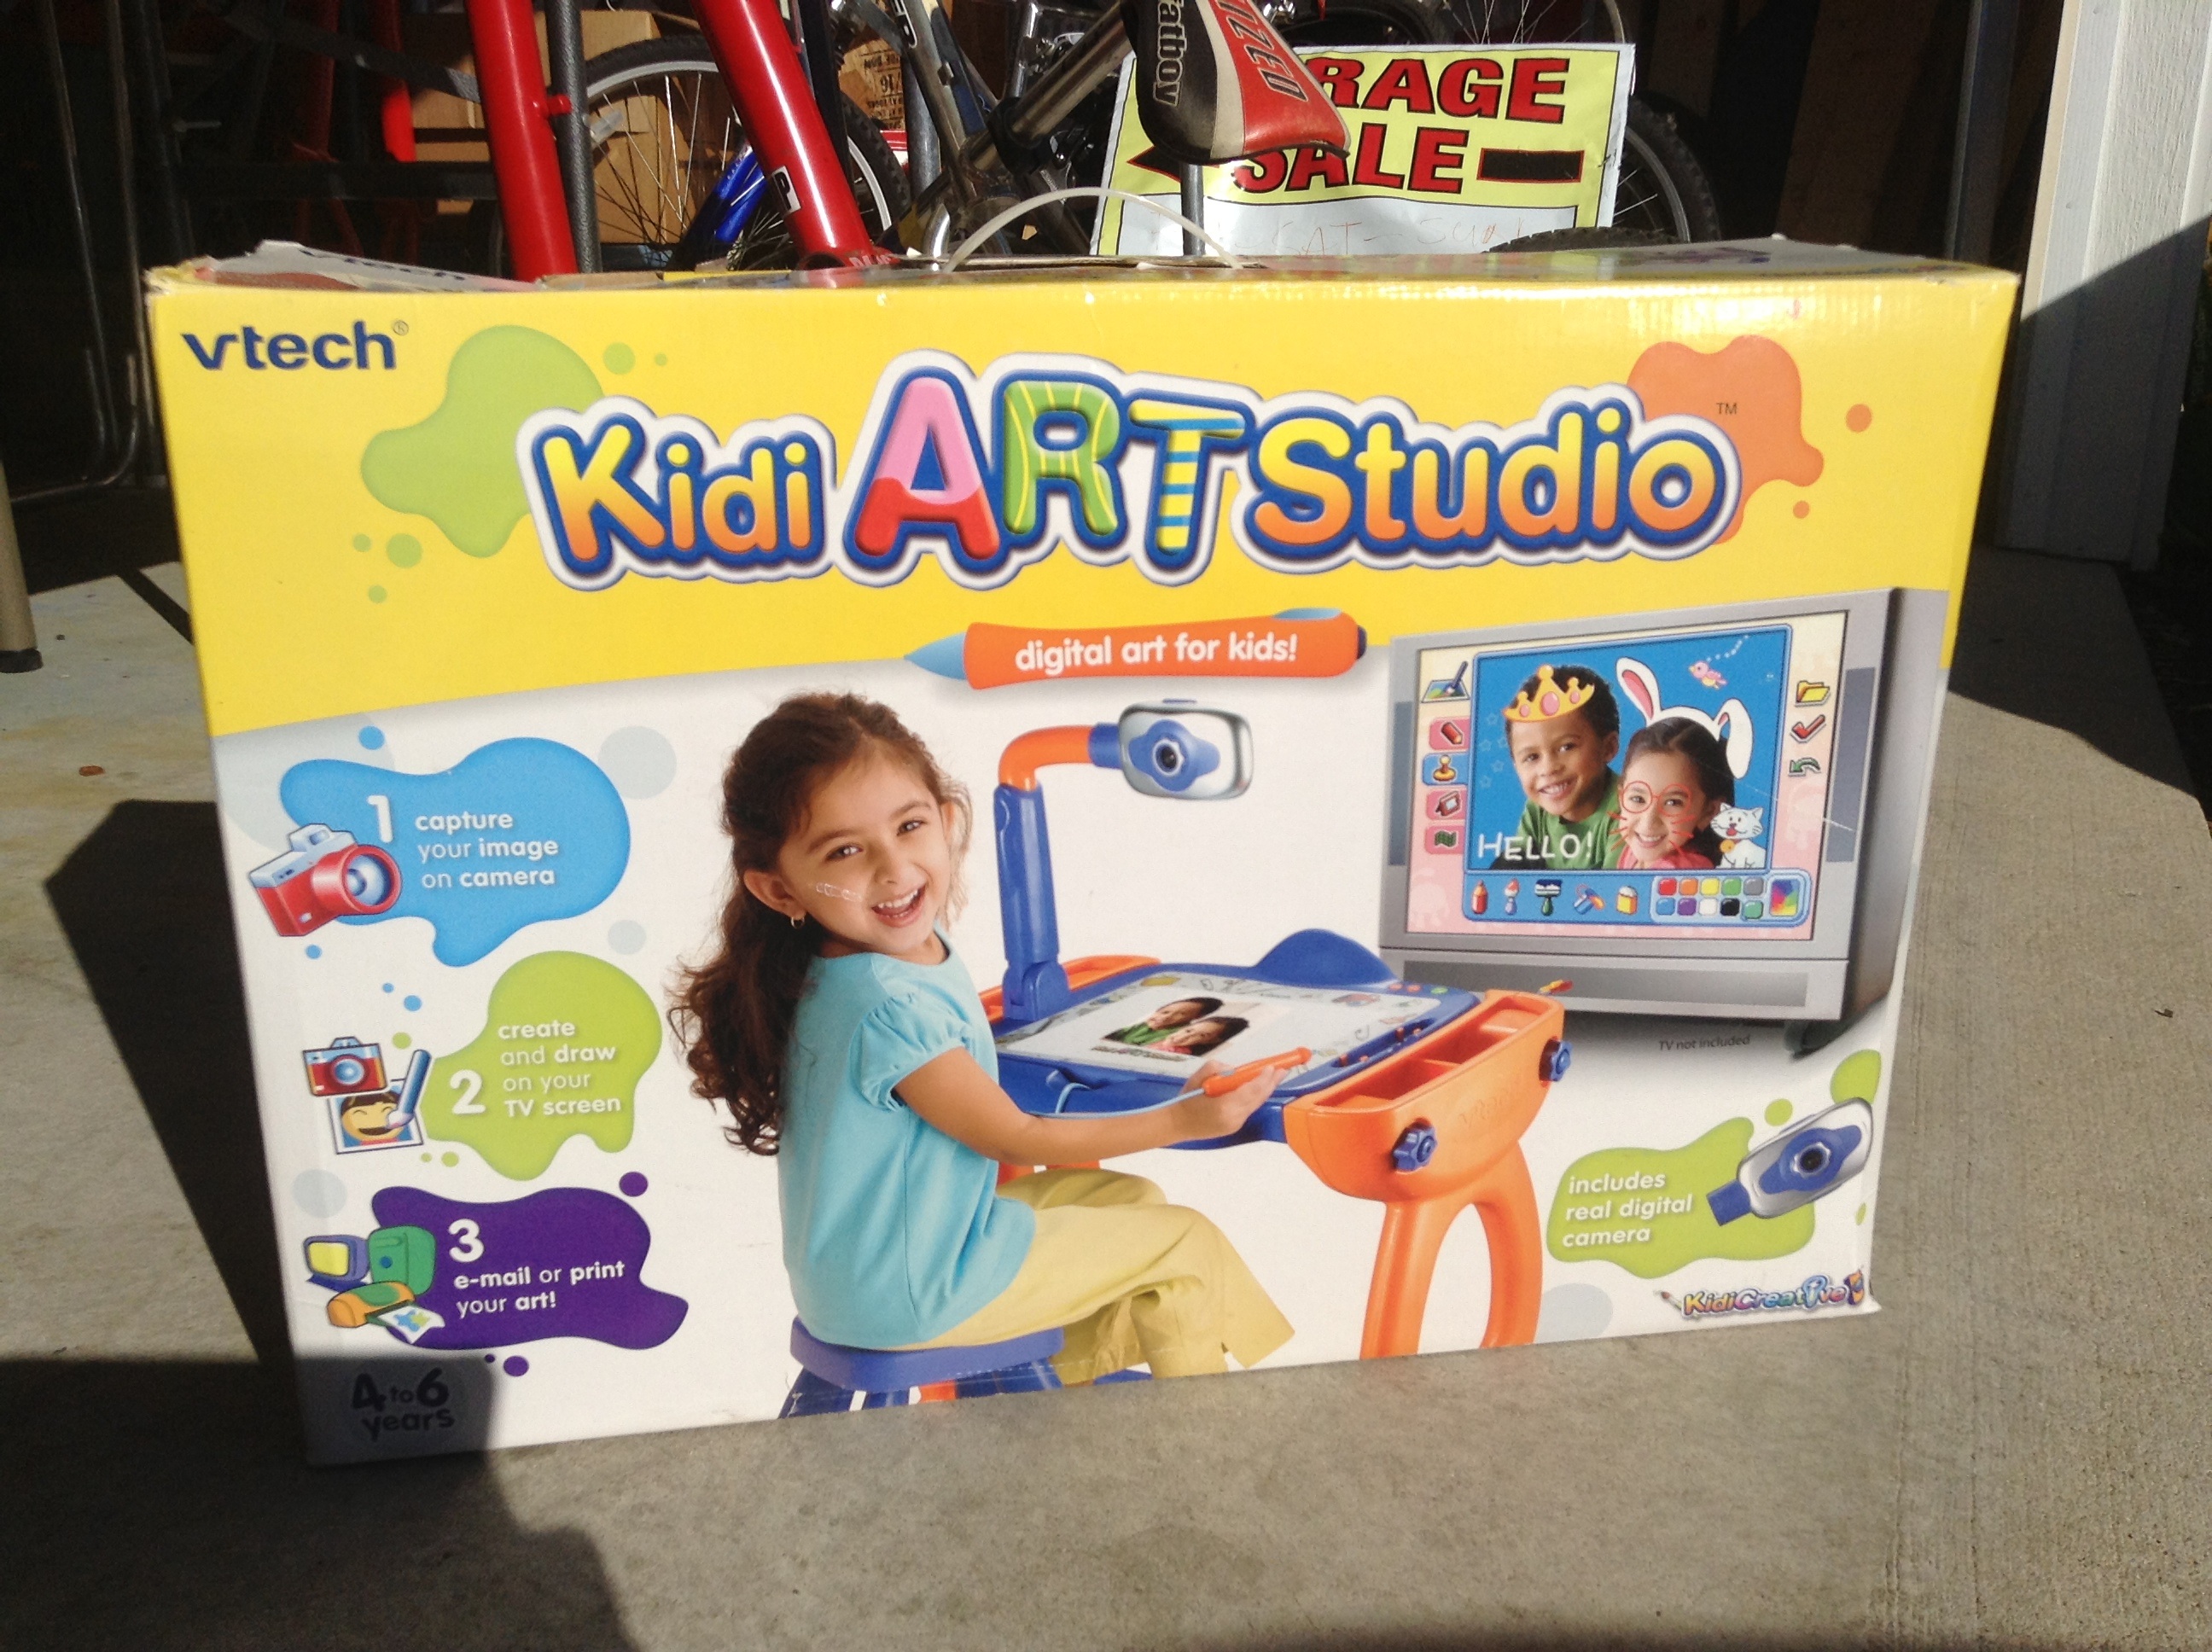 Kid digital art studio